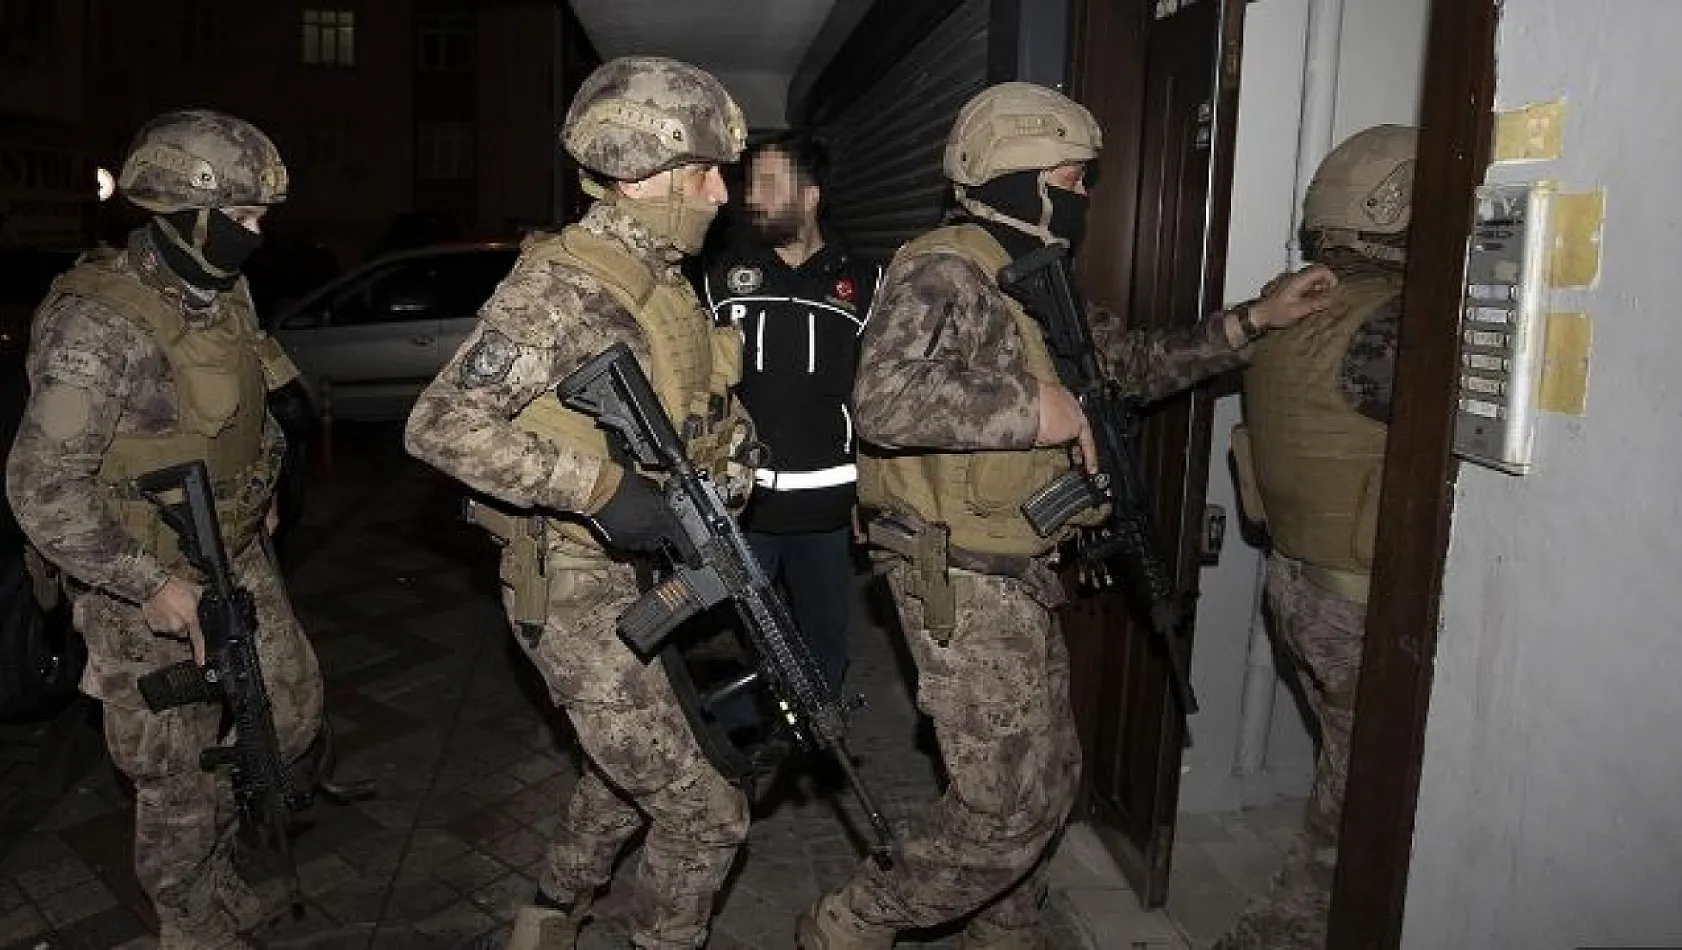 İstanbul'da FETÖ'ye Yönelik Kıskaç-13 Operasyonu: 13 Eski Askeri Öğrenci Yakalandı